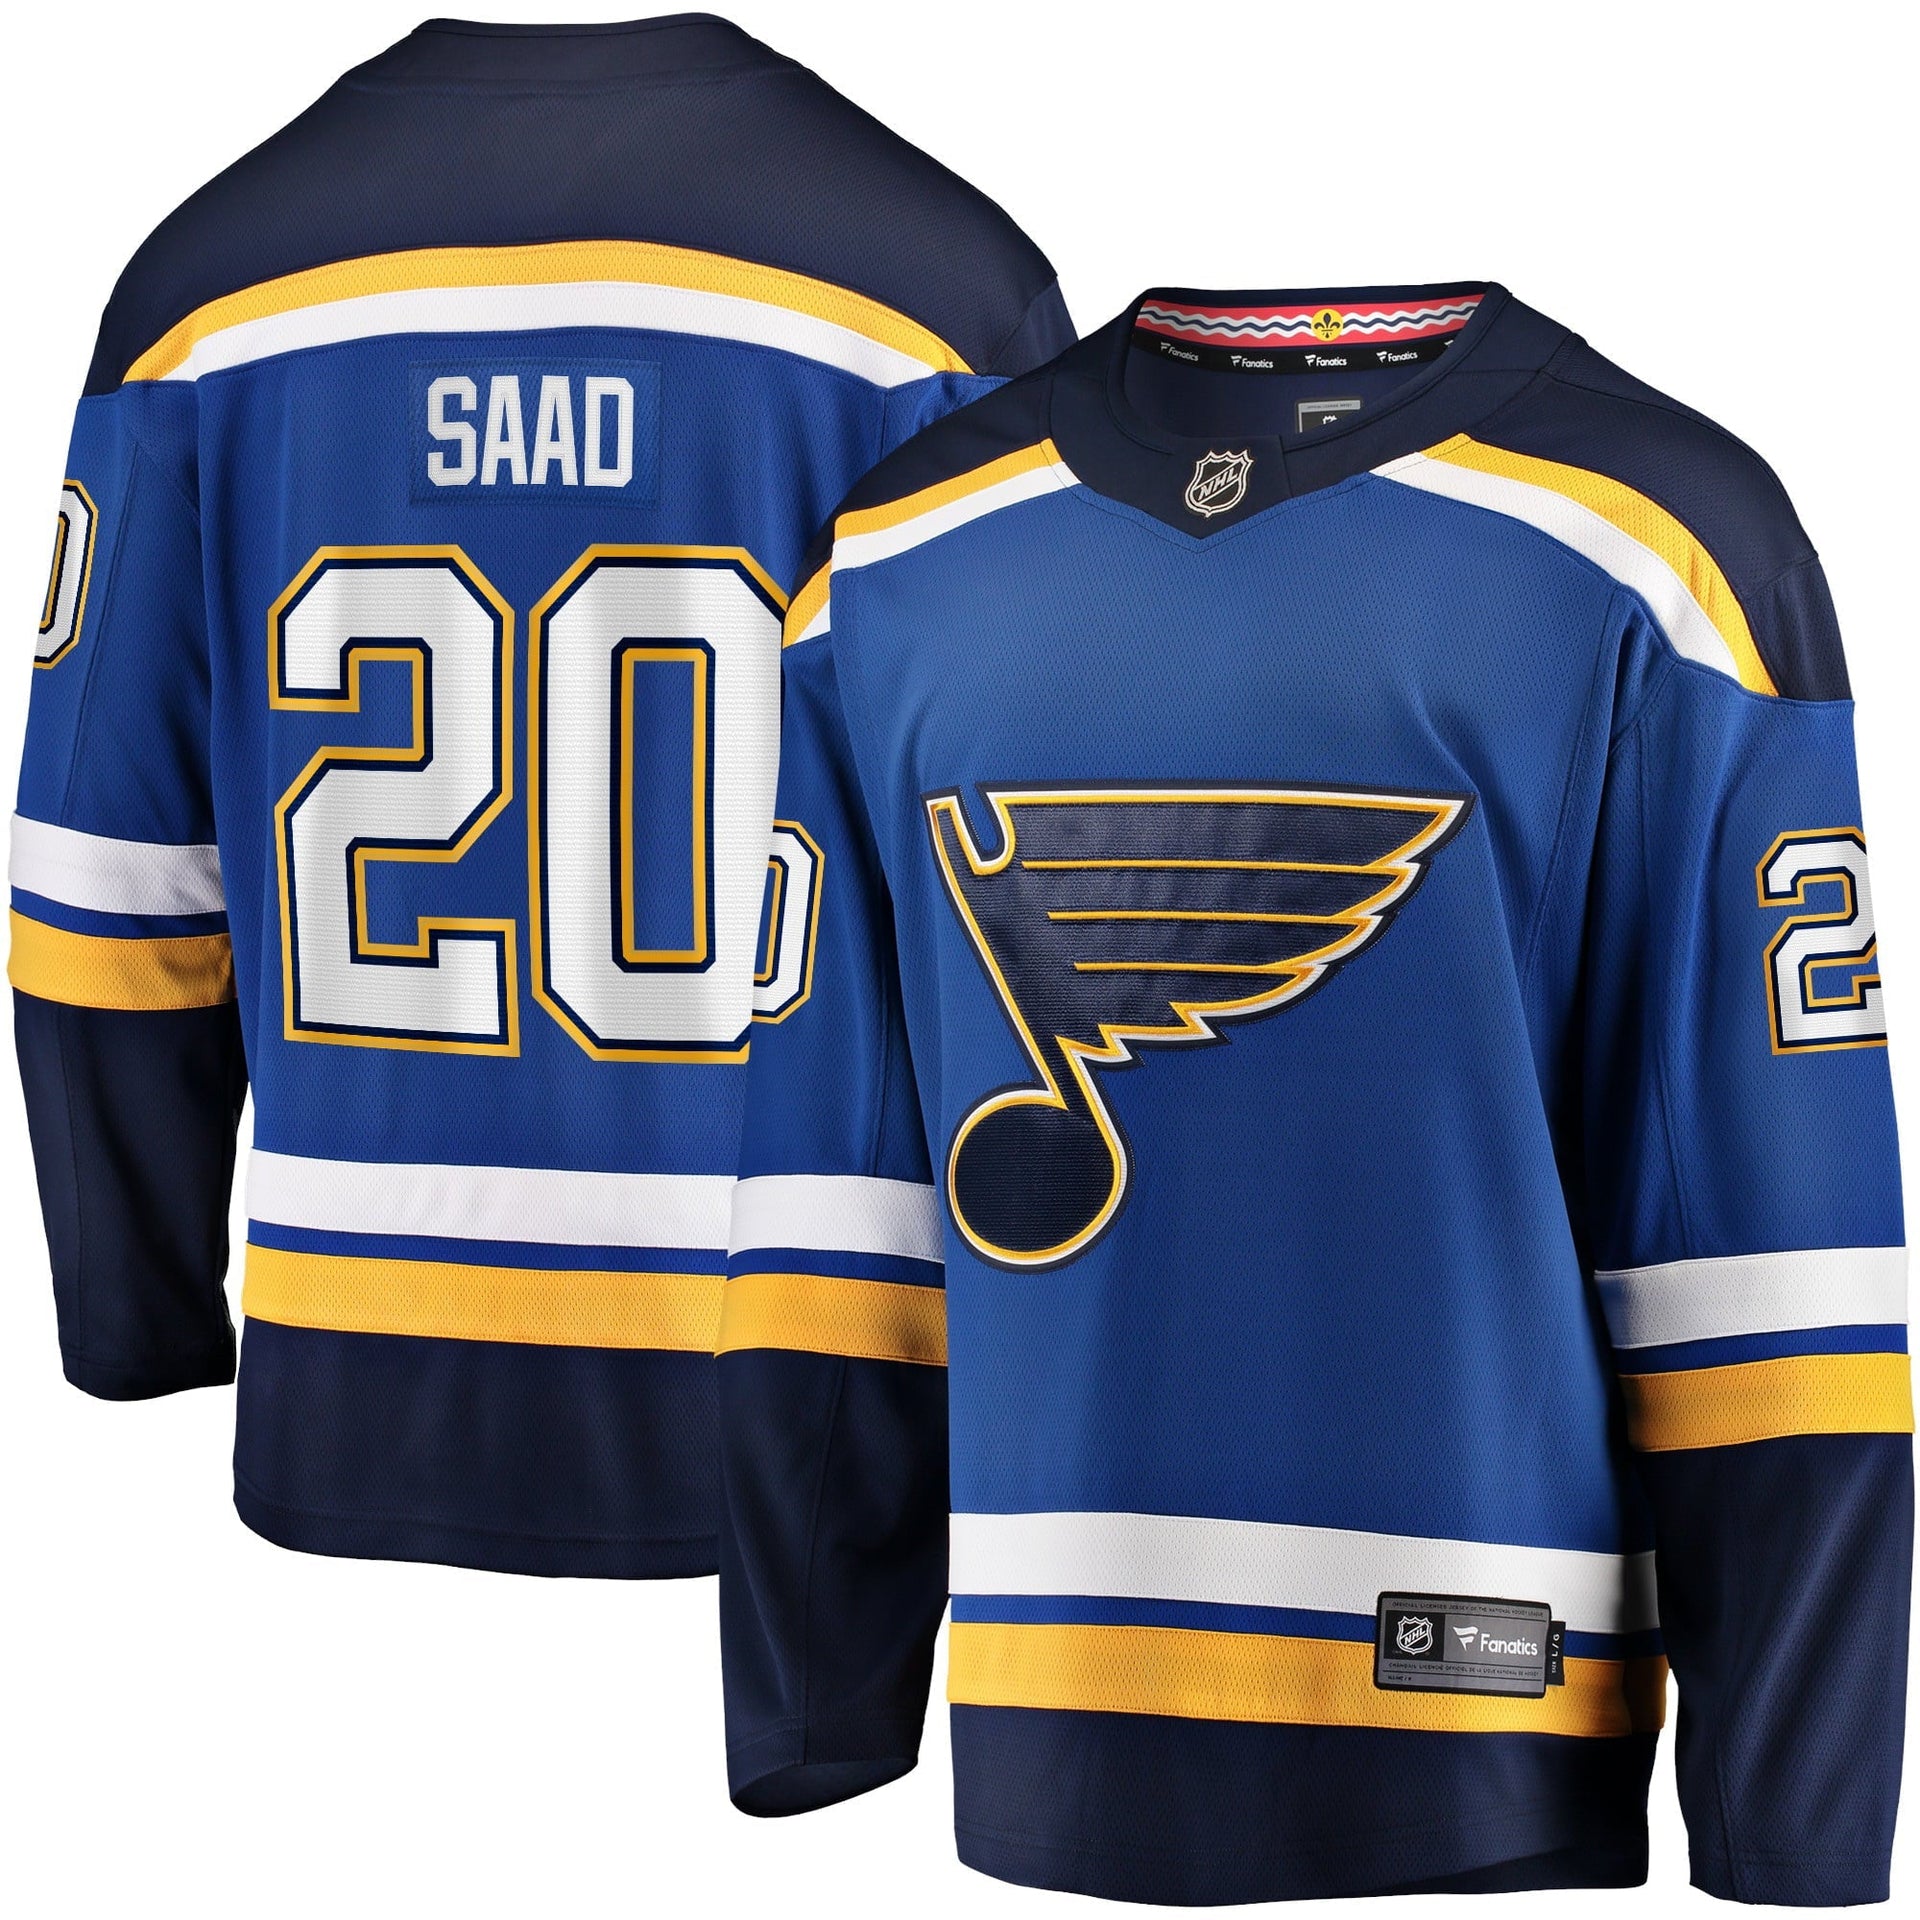 Brandon Saad in a St. Louis Blues jersey : r/hawks